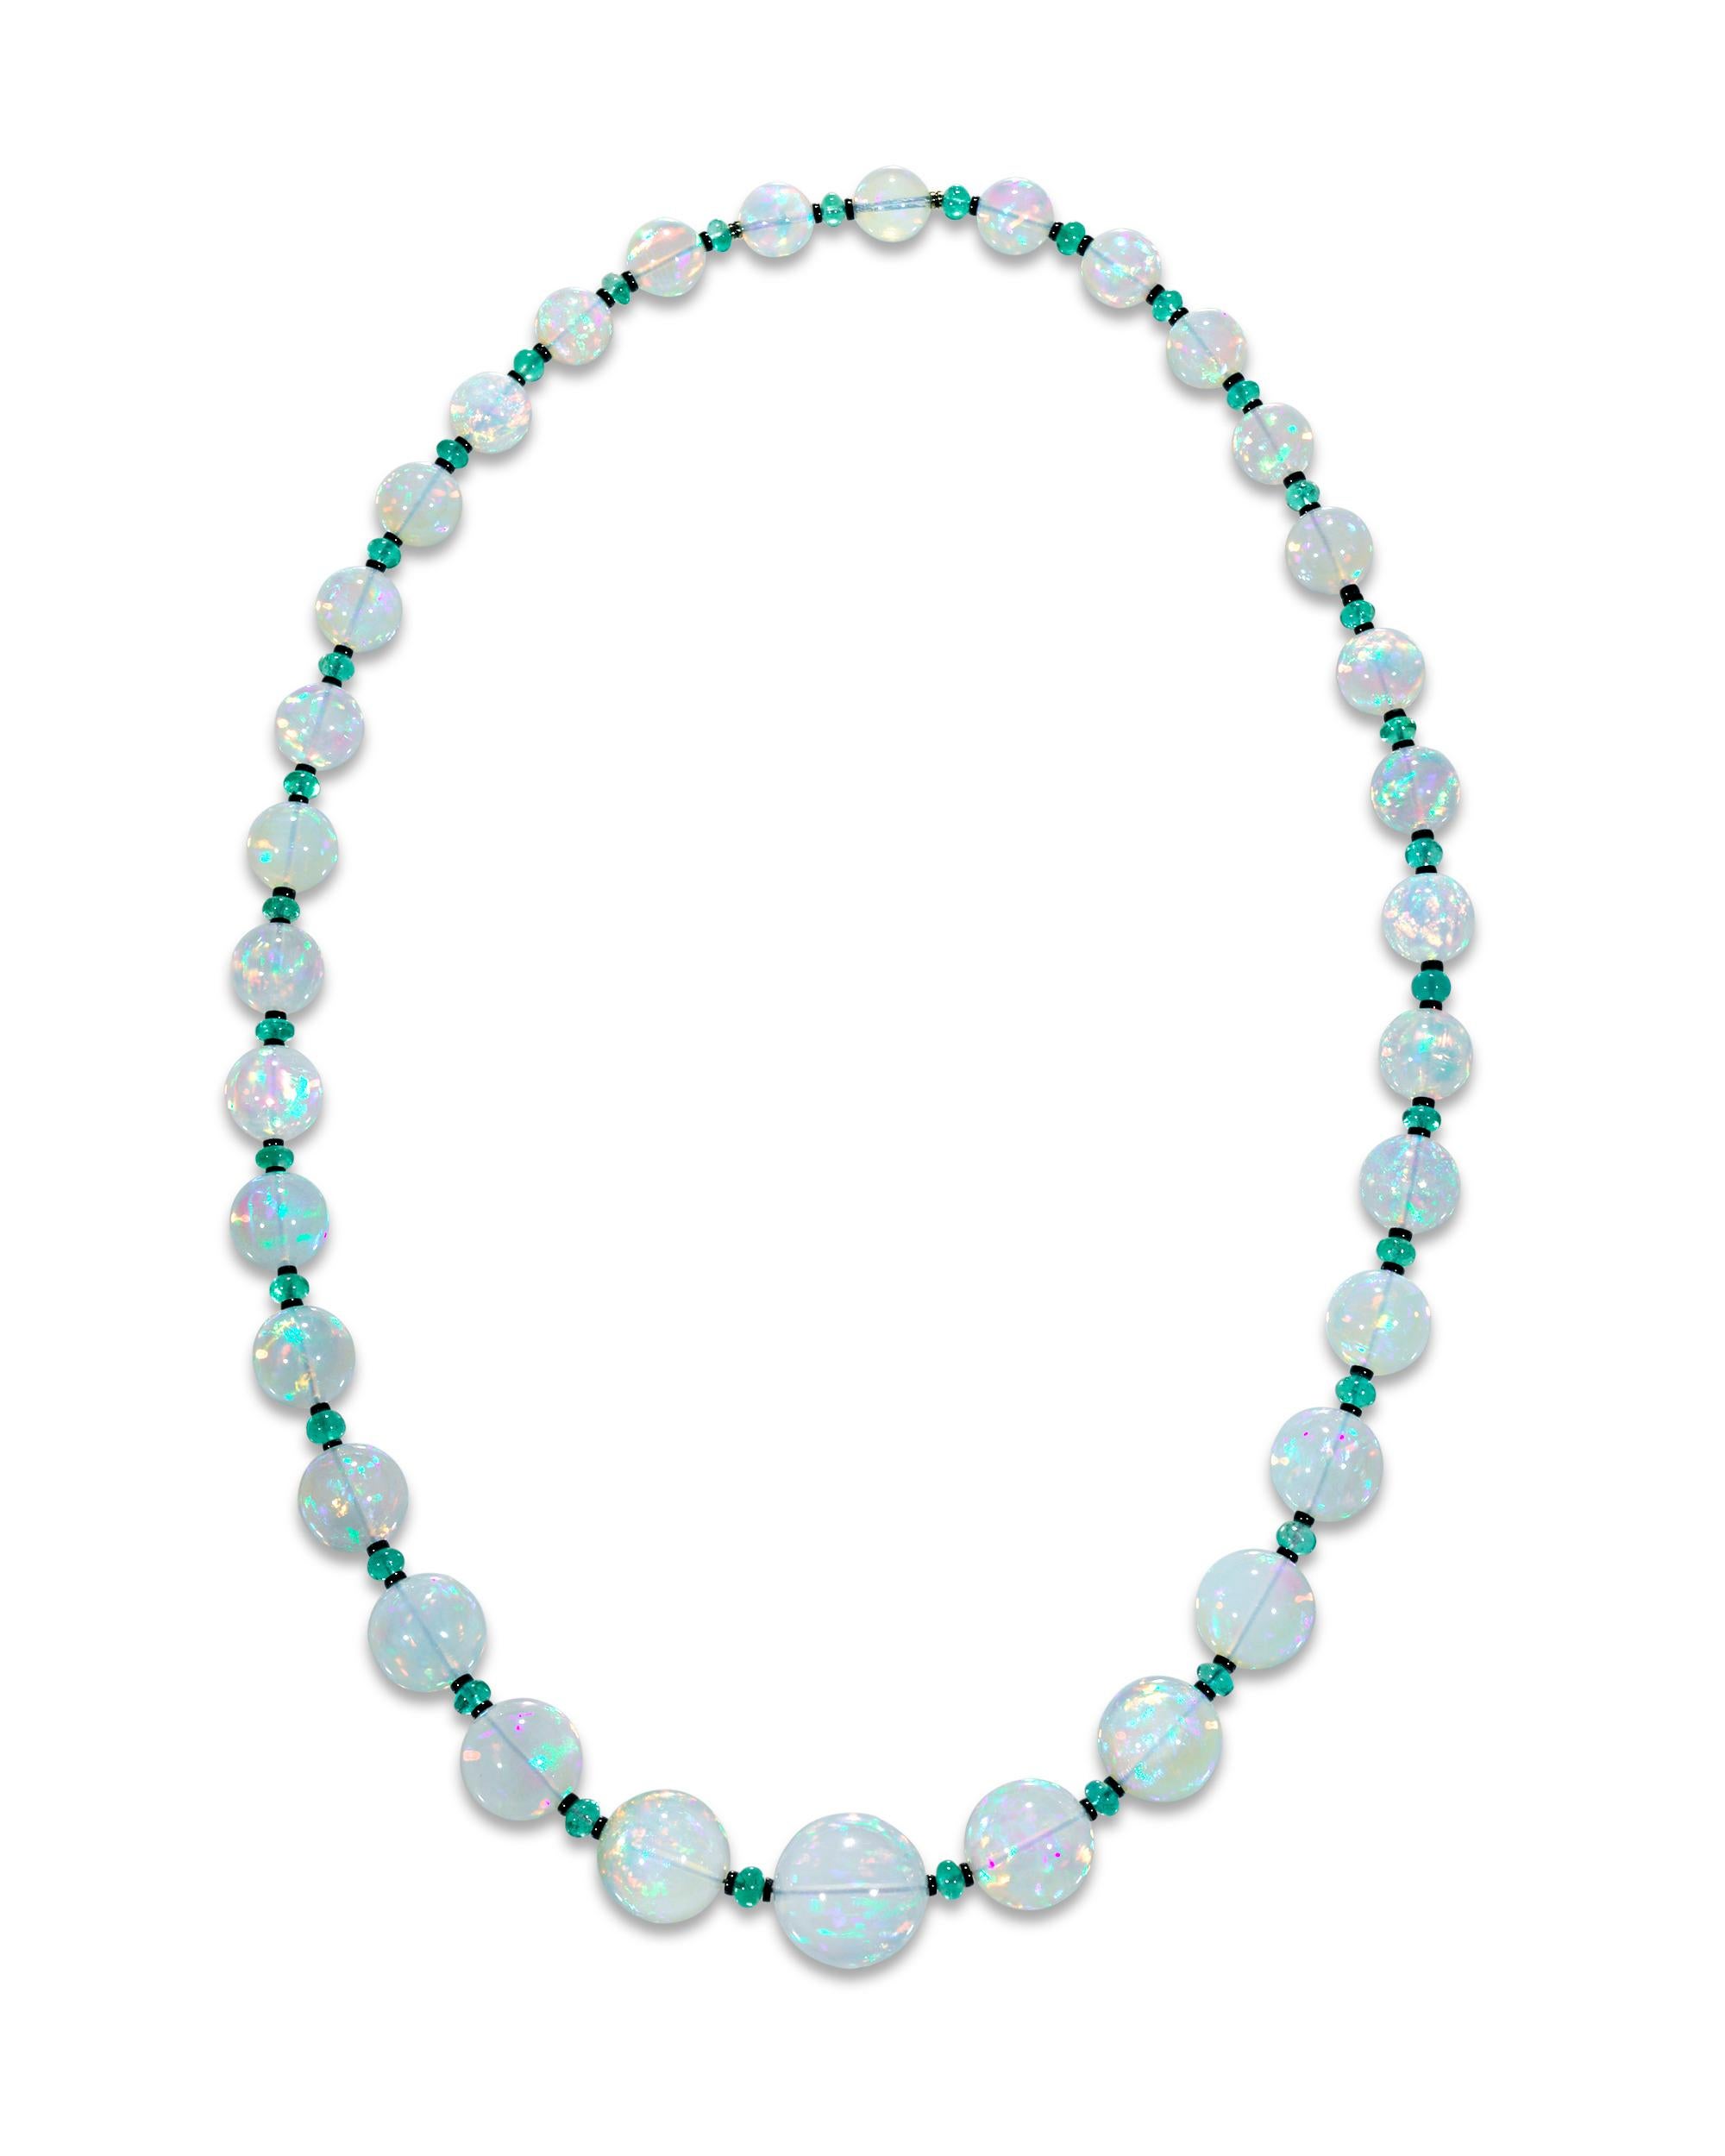 Trente-trois perles monumentales d'opale éthiopienne totalisant environ 436,00 carats composent ce collier envoûtant. Les gemmes graduées ne sont pas seulement impressionnantes par leur taille, mais chacune d'entre elles présente un niveau élevé de